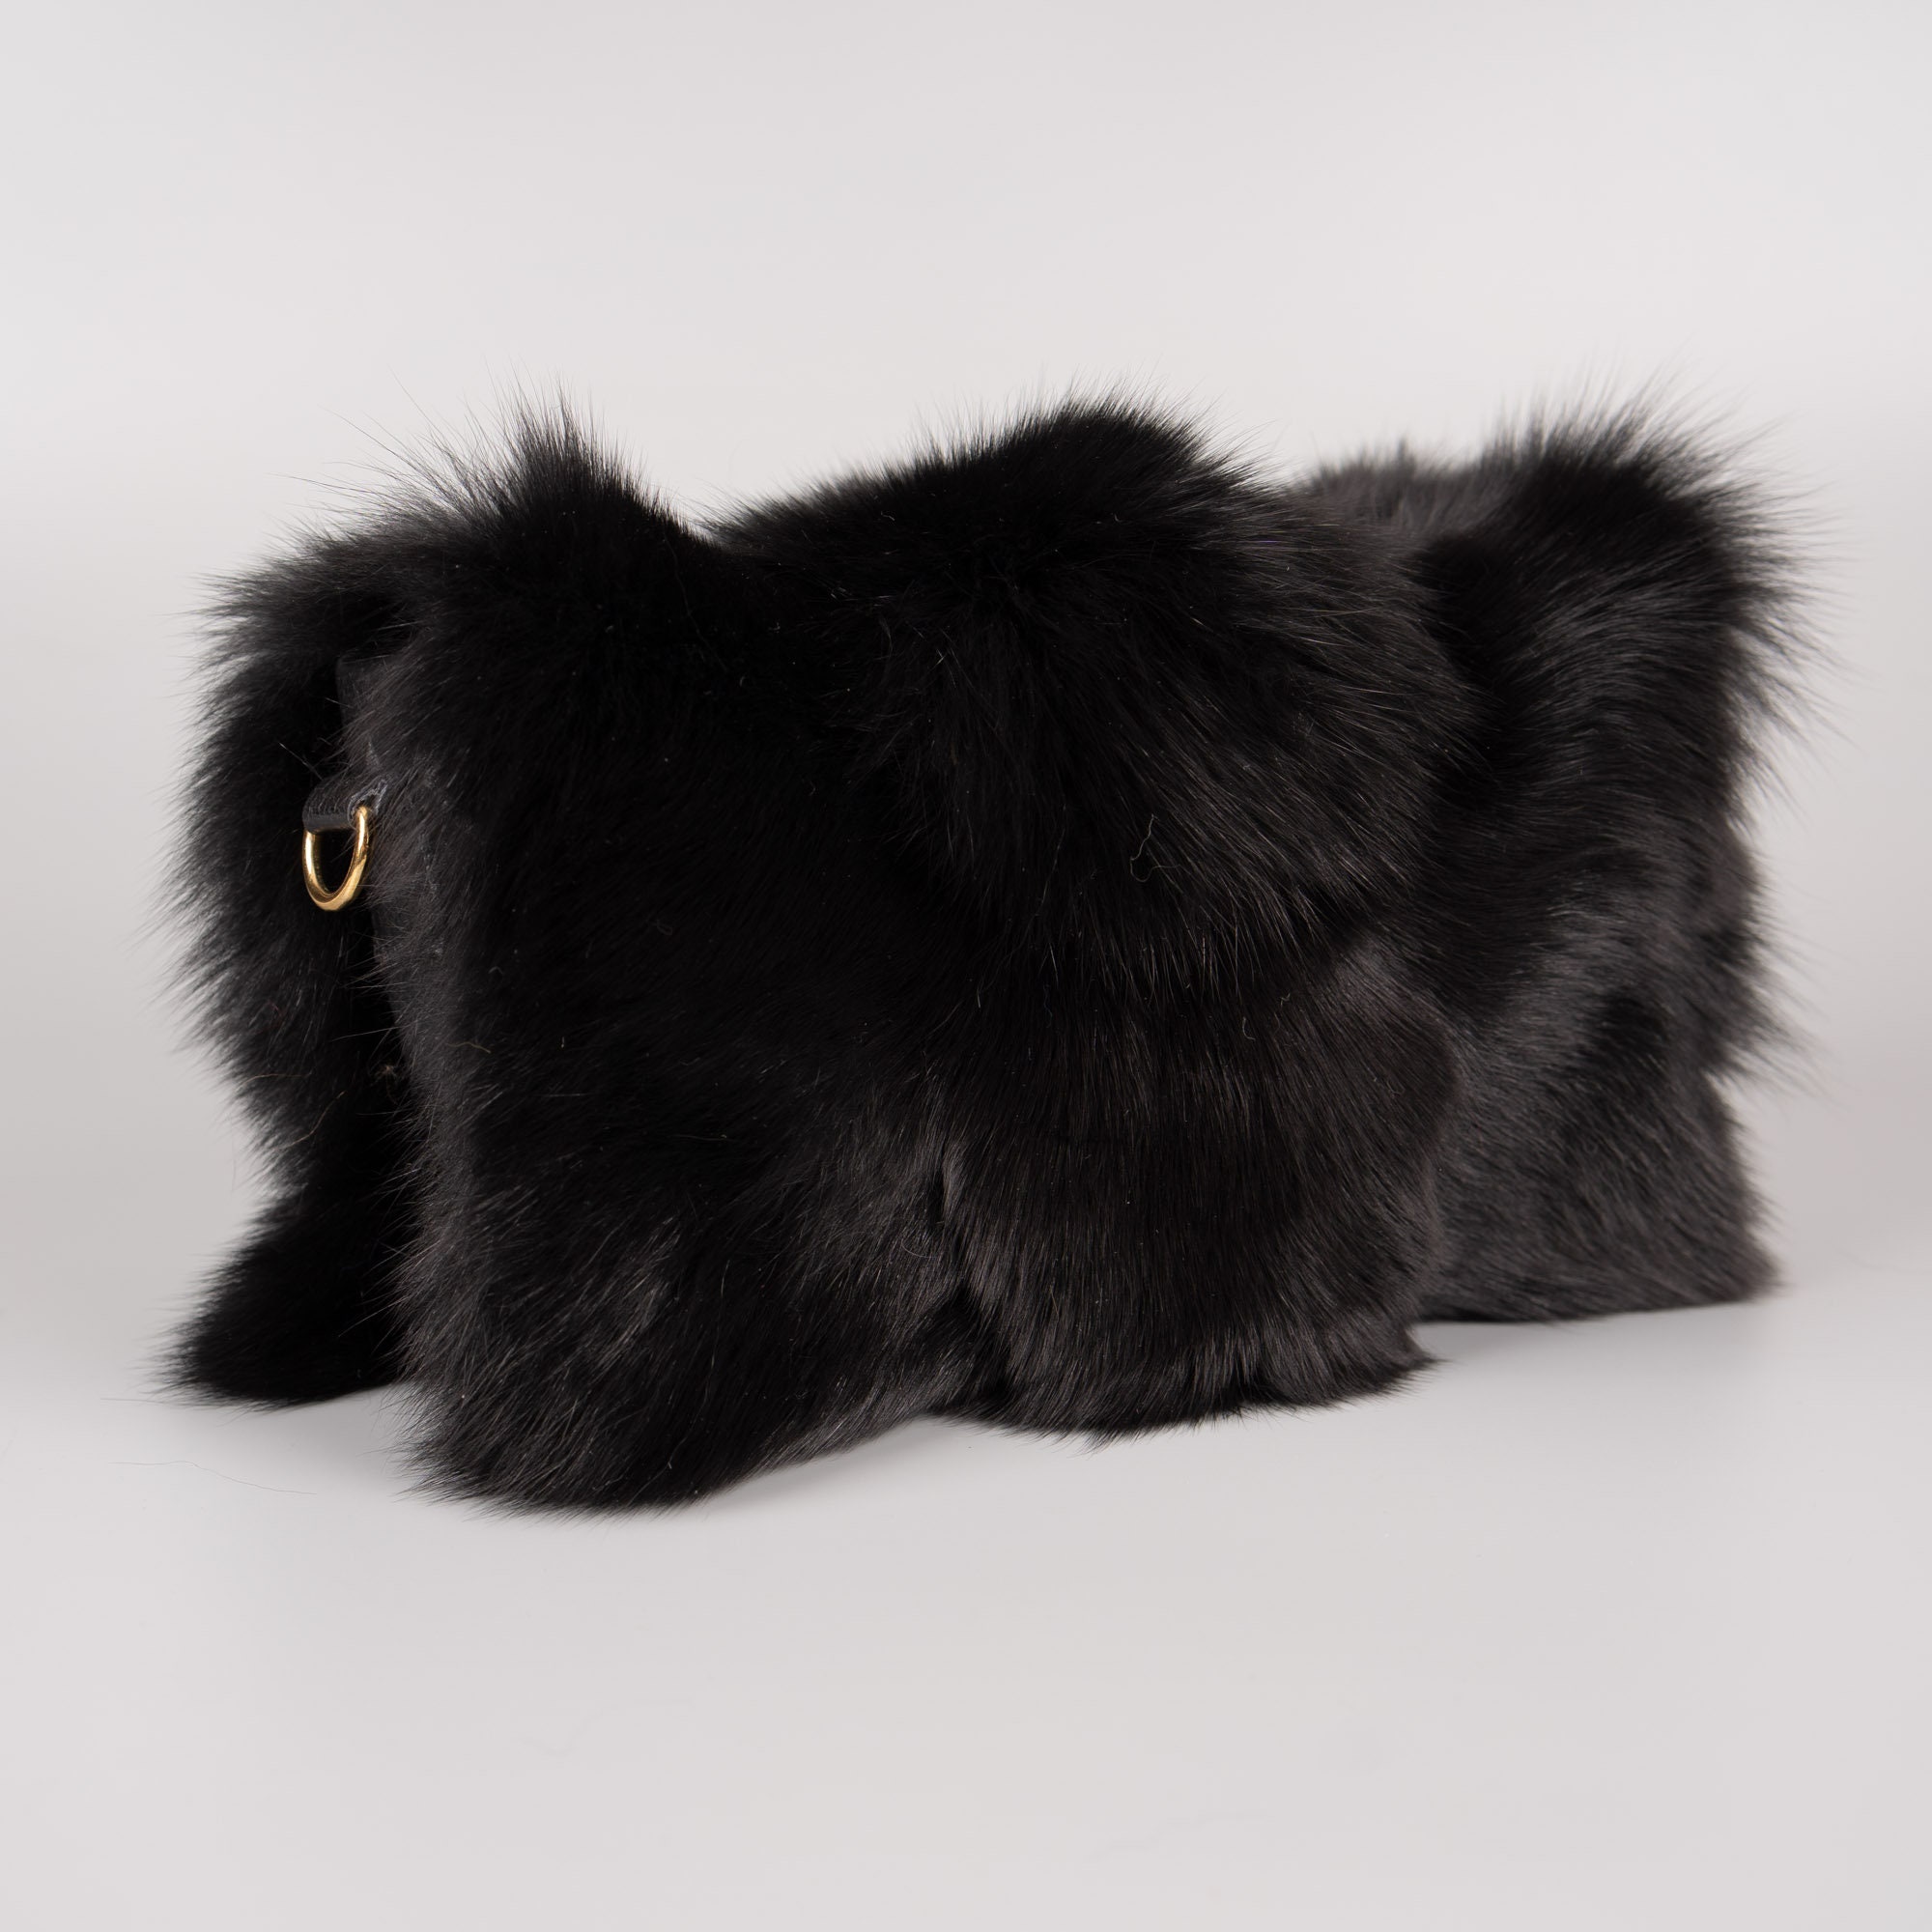 Black fox fur shoulder bag with leather details